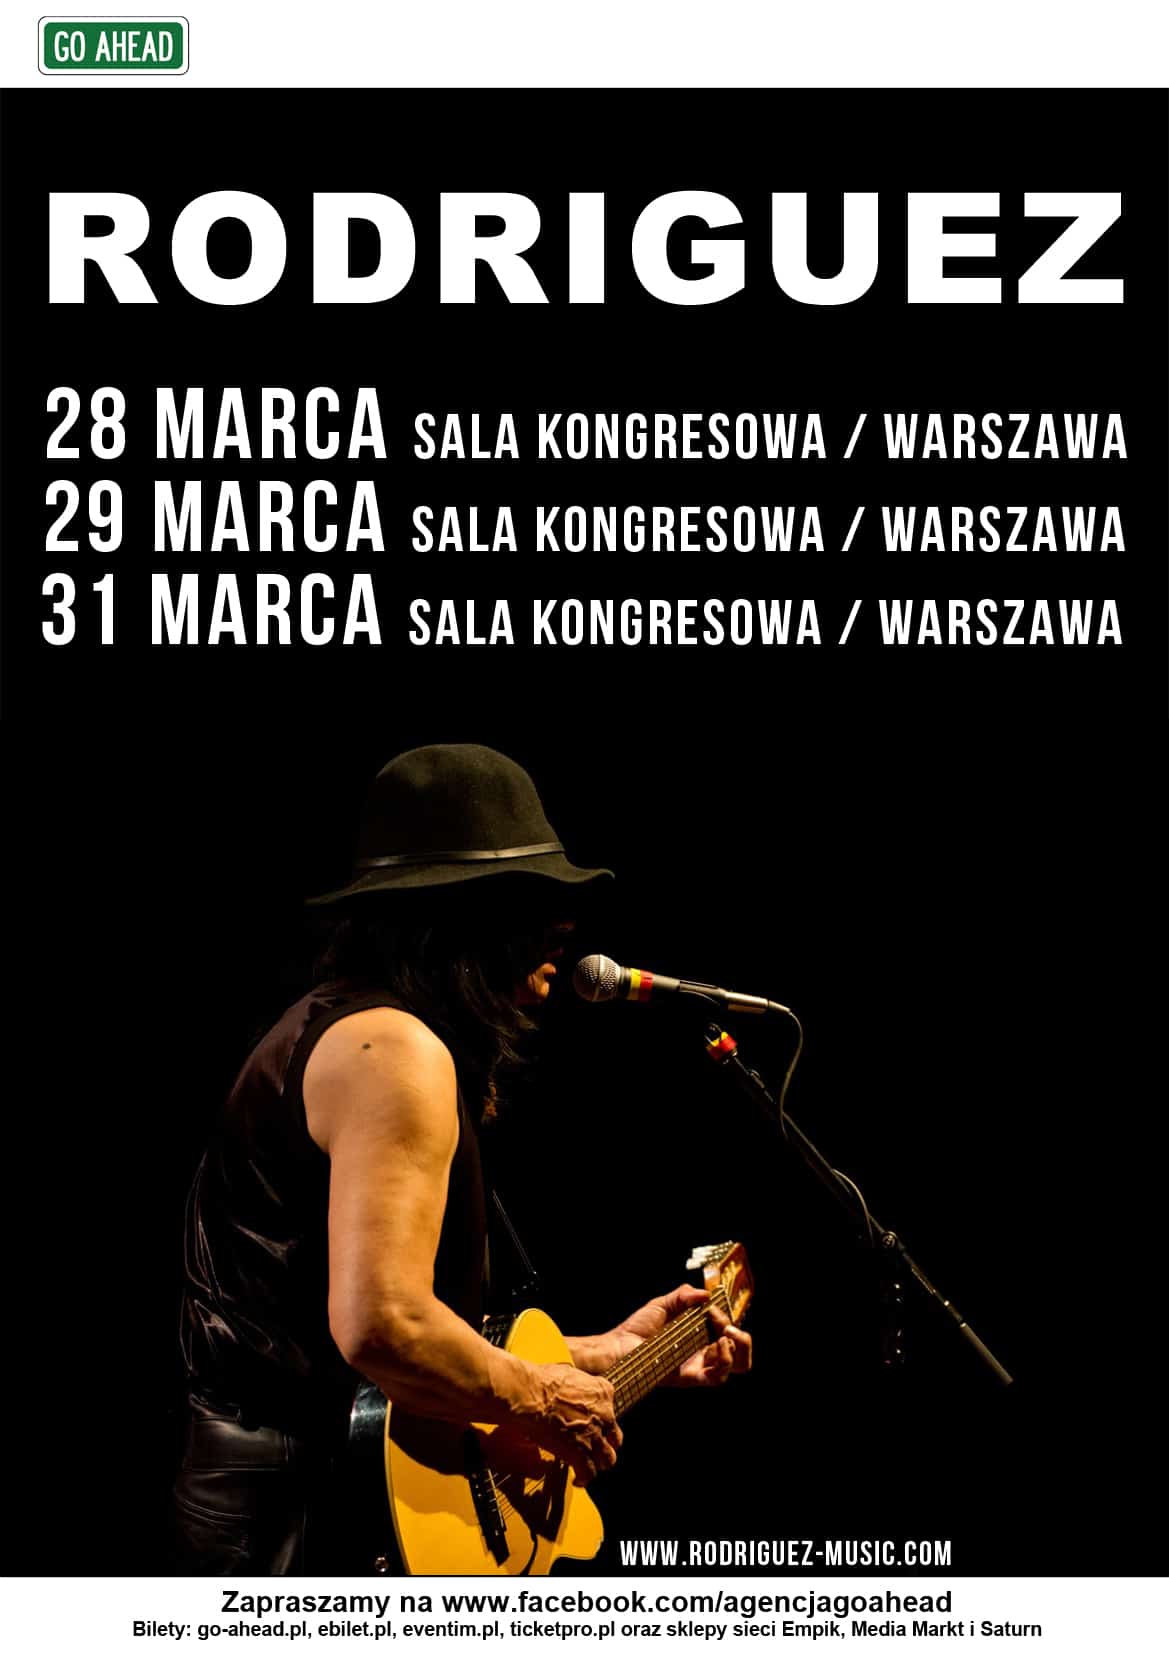 Trzeci koncert Rodrigueza w warszawskiej Sali Kongresowej!